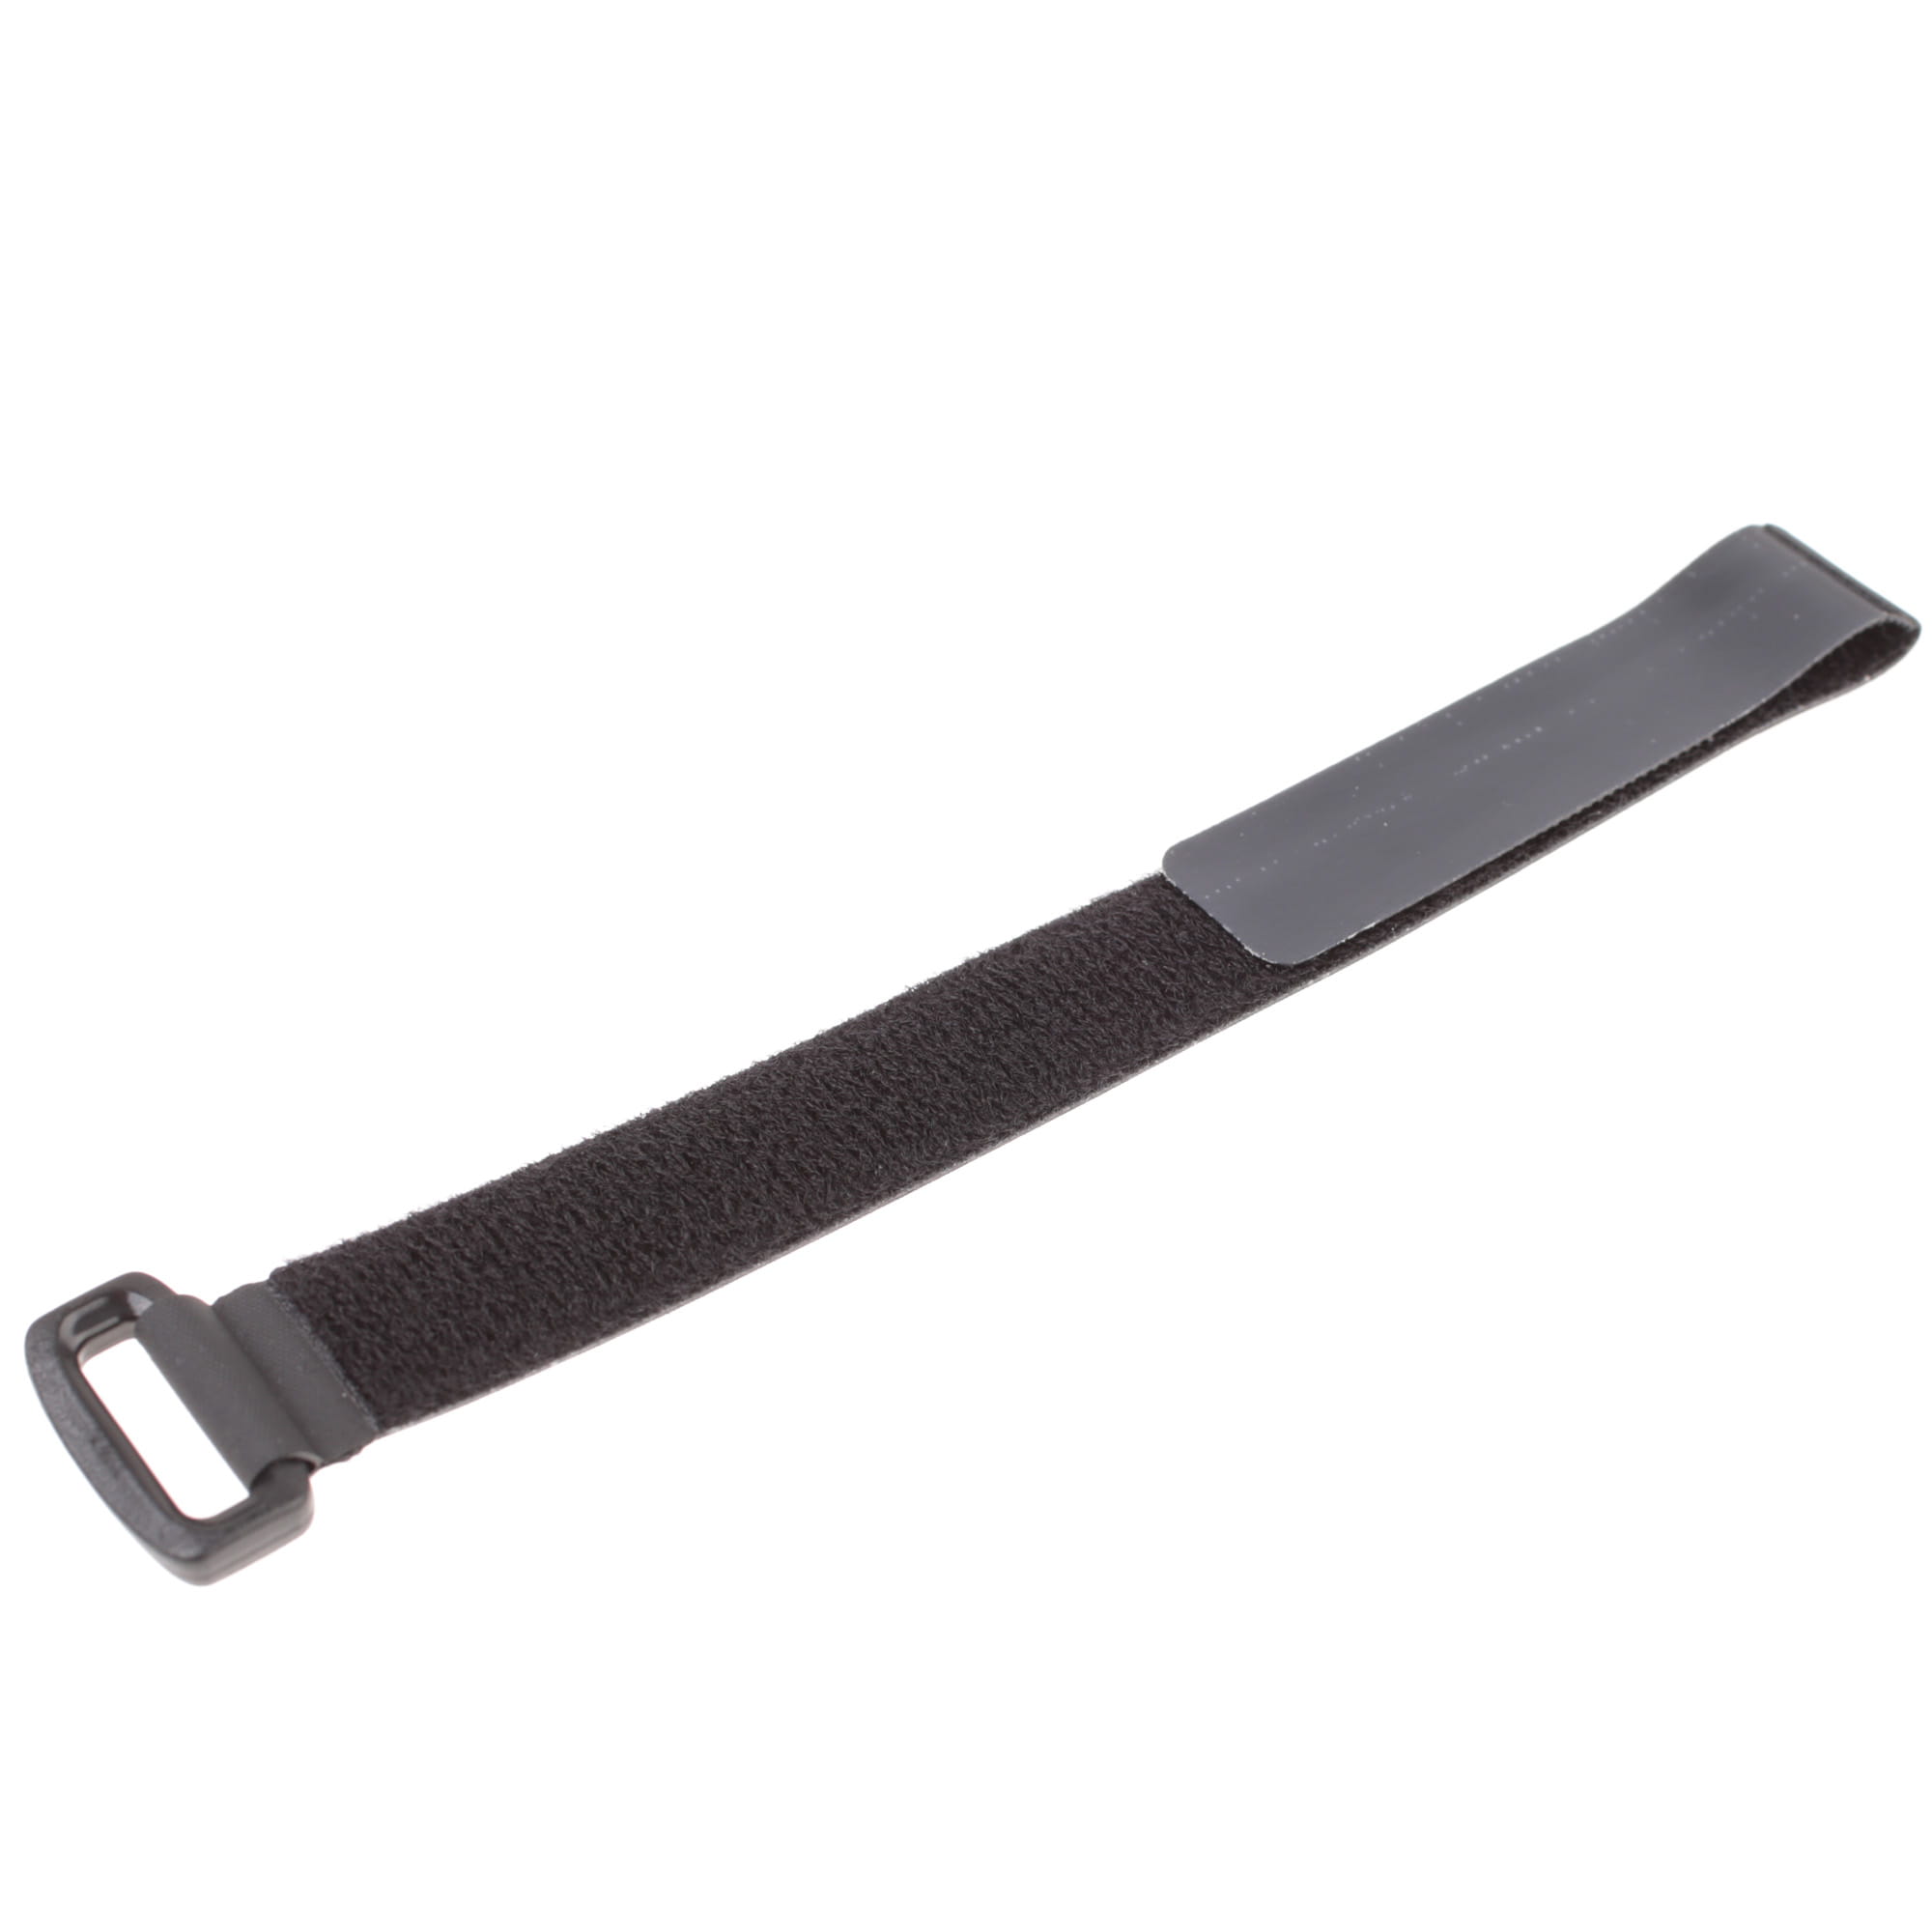 CYCLITE Velcro Fixation Strap (medium) für Lenker-, Rahmen- oder